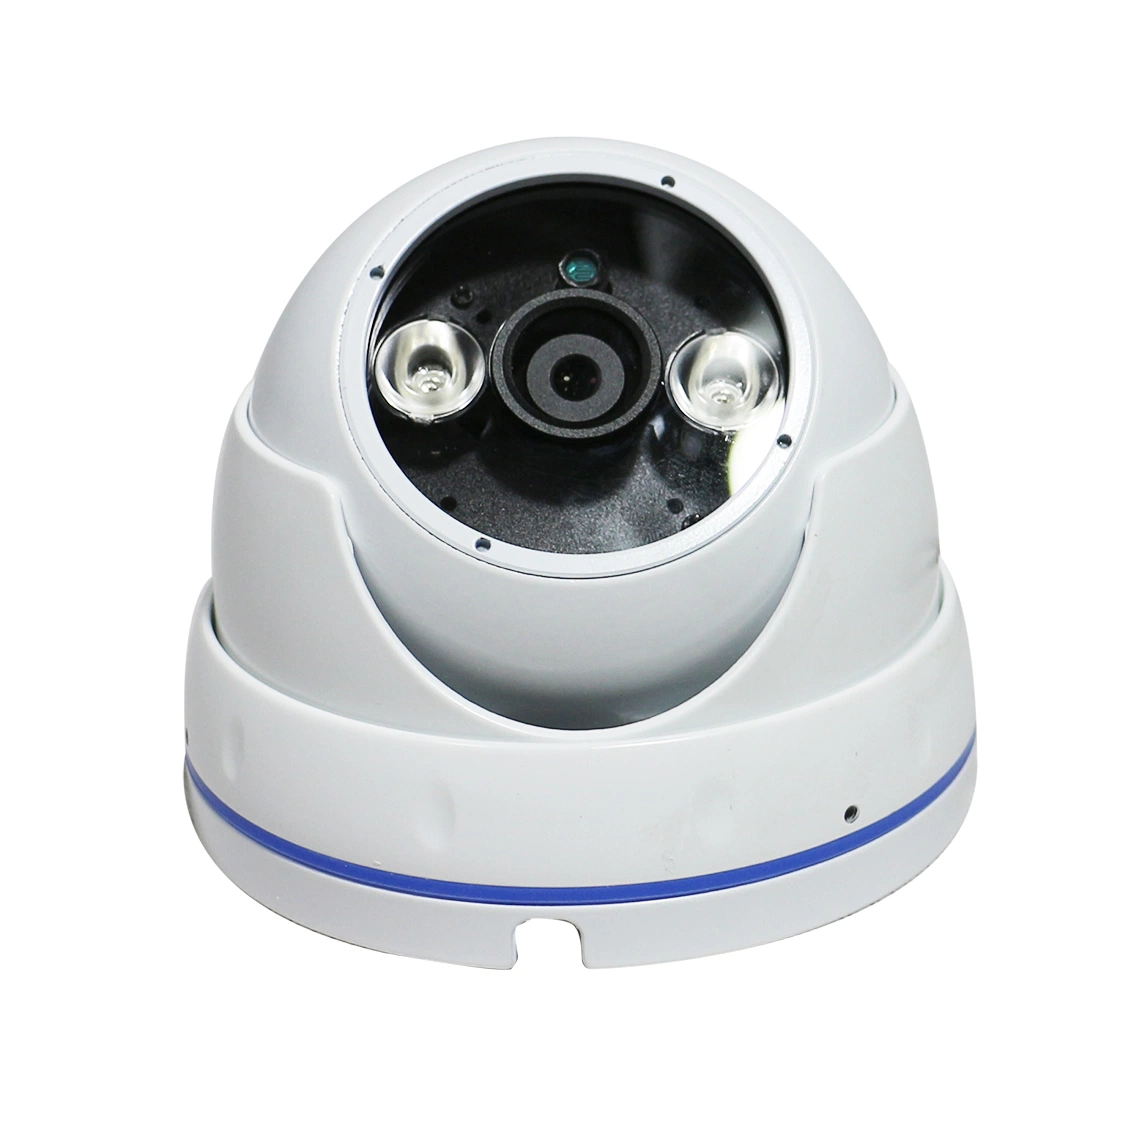 حماية كاميرا نظام SIP PA الصديق للبيئة عالية الدقة كاميرا قبة تعمل بالأشعة تحت الحمراء لشبكة IP عالية السرعة مع أداء عالٍ